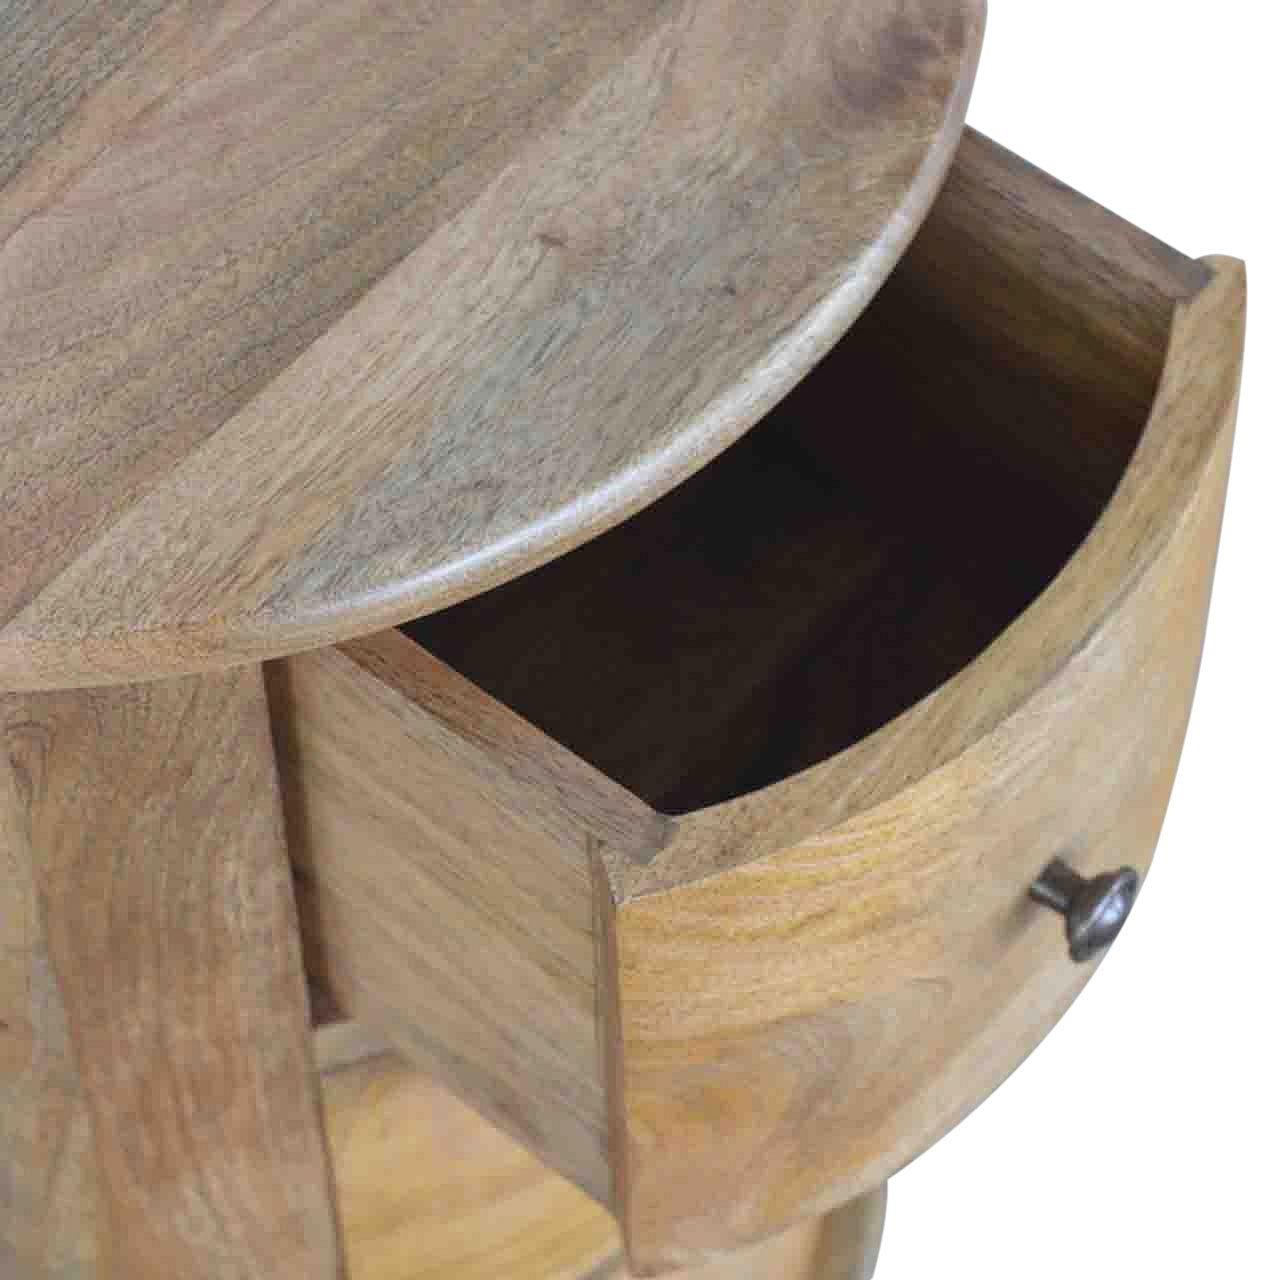 3 drawer drum chest - crimblefest furniture - image 7